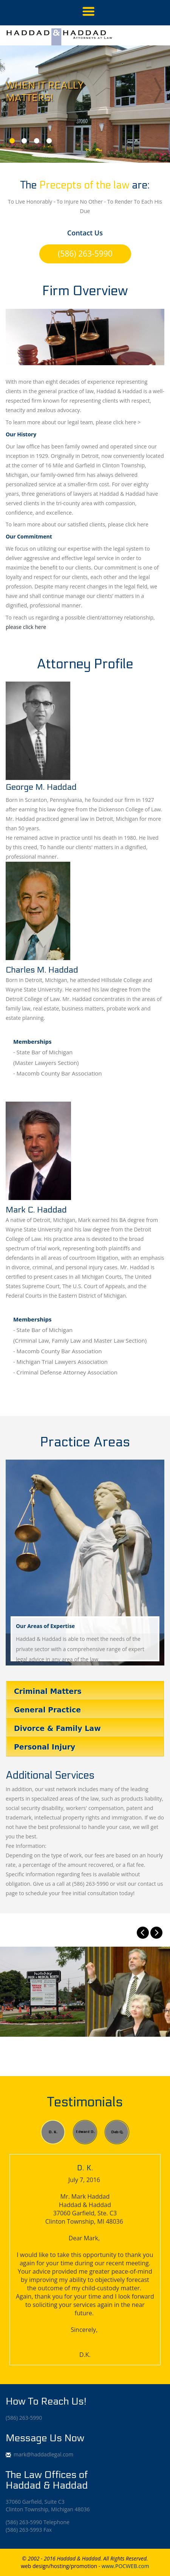 Haddad & Haddad - Clinton Township MI Lawyers